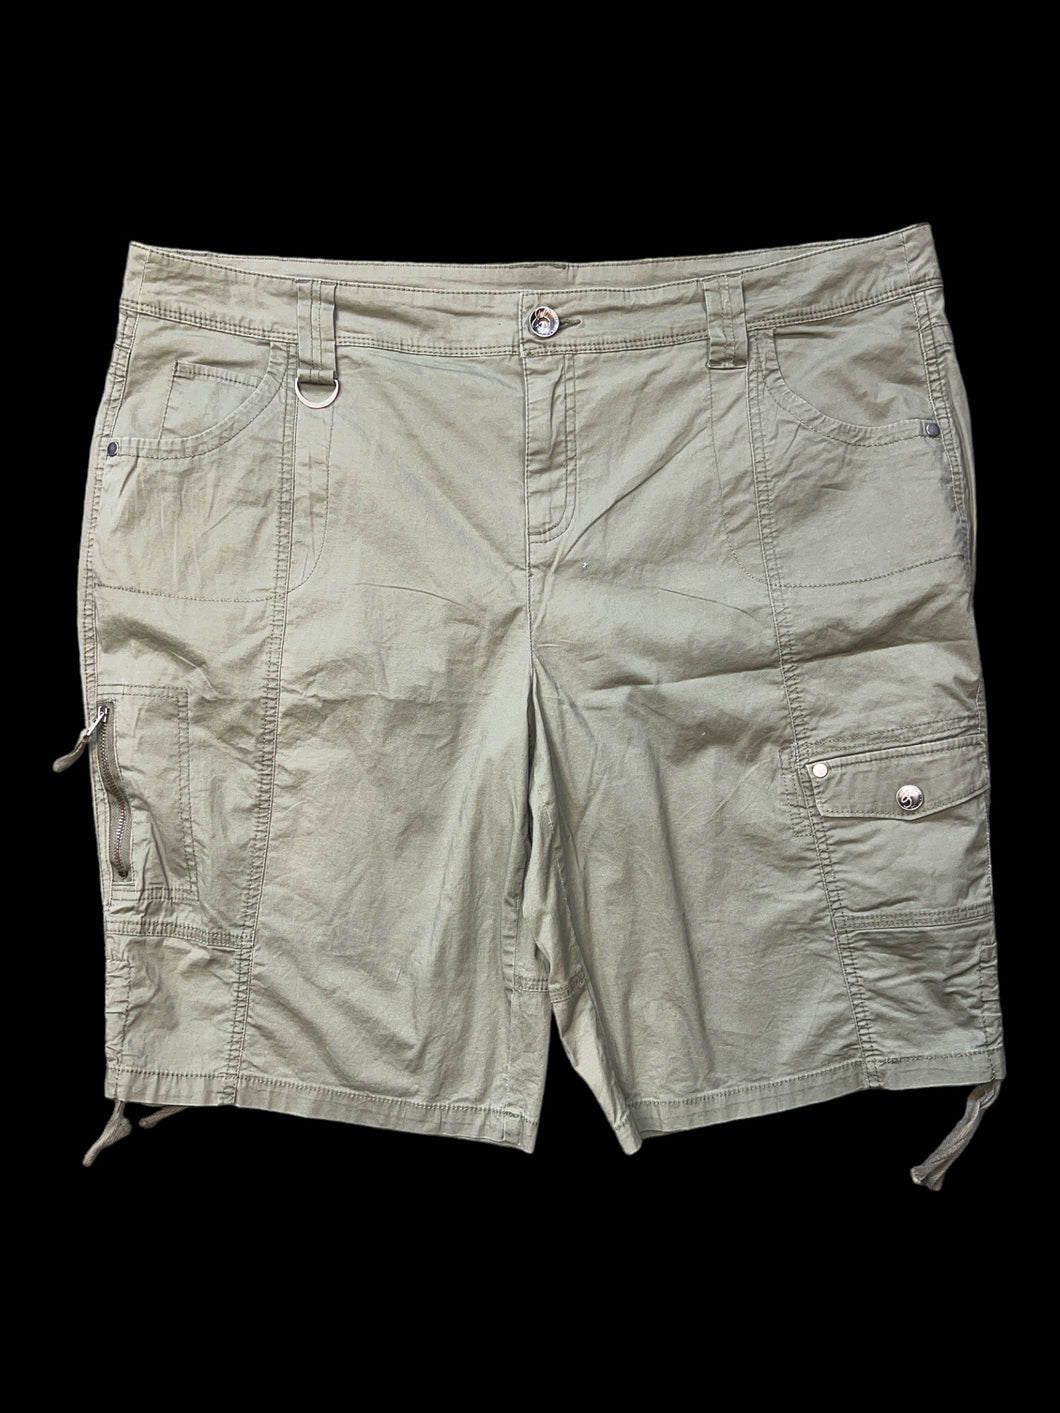 1X Green cargo shorts w/ pockets, belt loops, & button/zipper closure